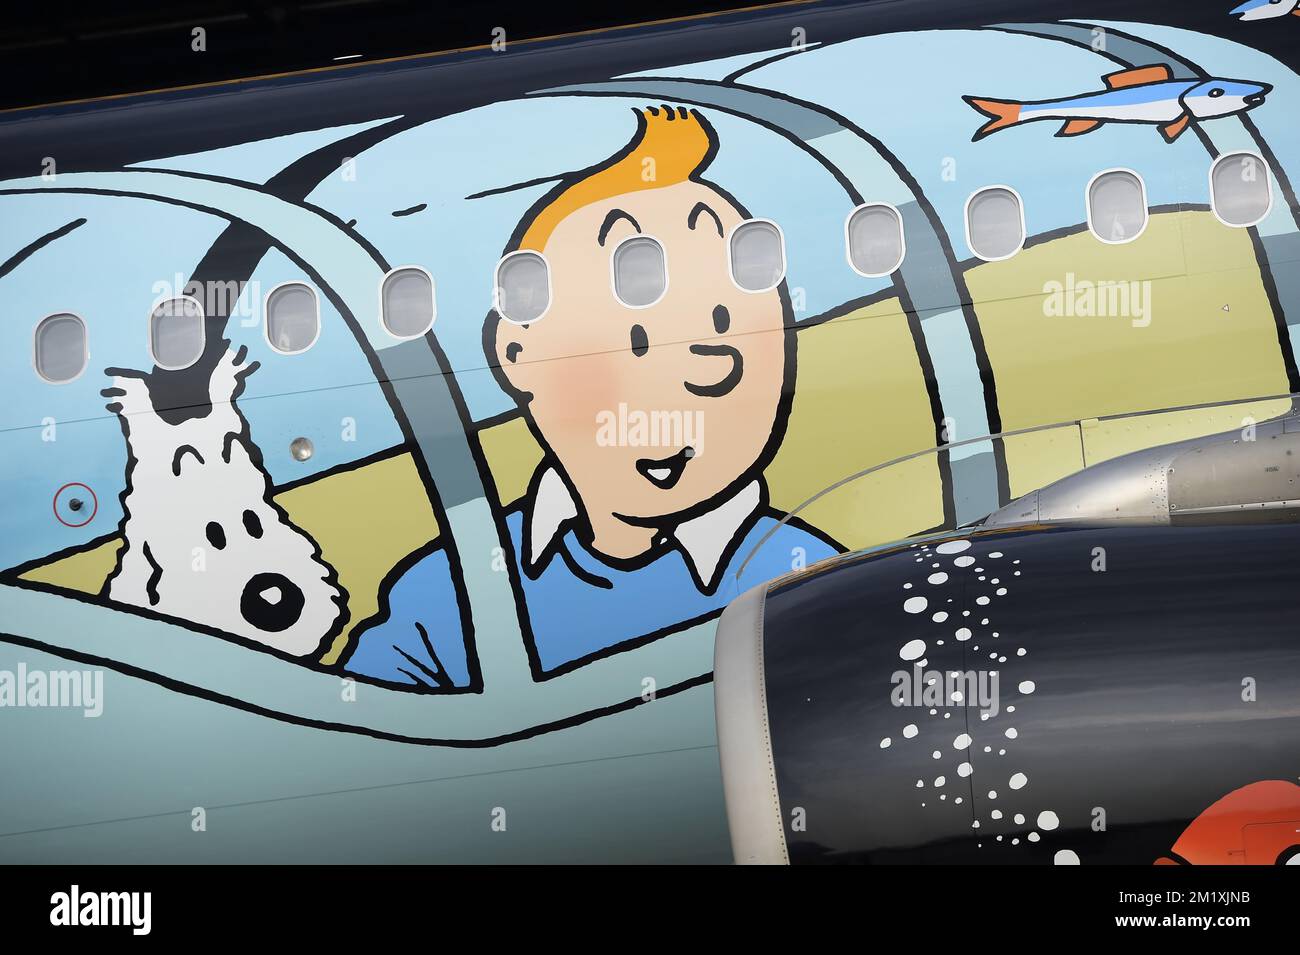 SOLO PER USO EDITORIALE:l'illustrazione mostra l'inaugurazione di un aereo a tema Tintin di Brussels Airlines, lunedì 16 marzo 2015 all'aeroporto di Bruxelles a Zaventem. Foto Stock